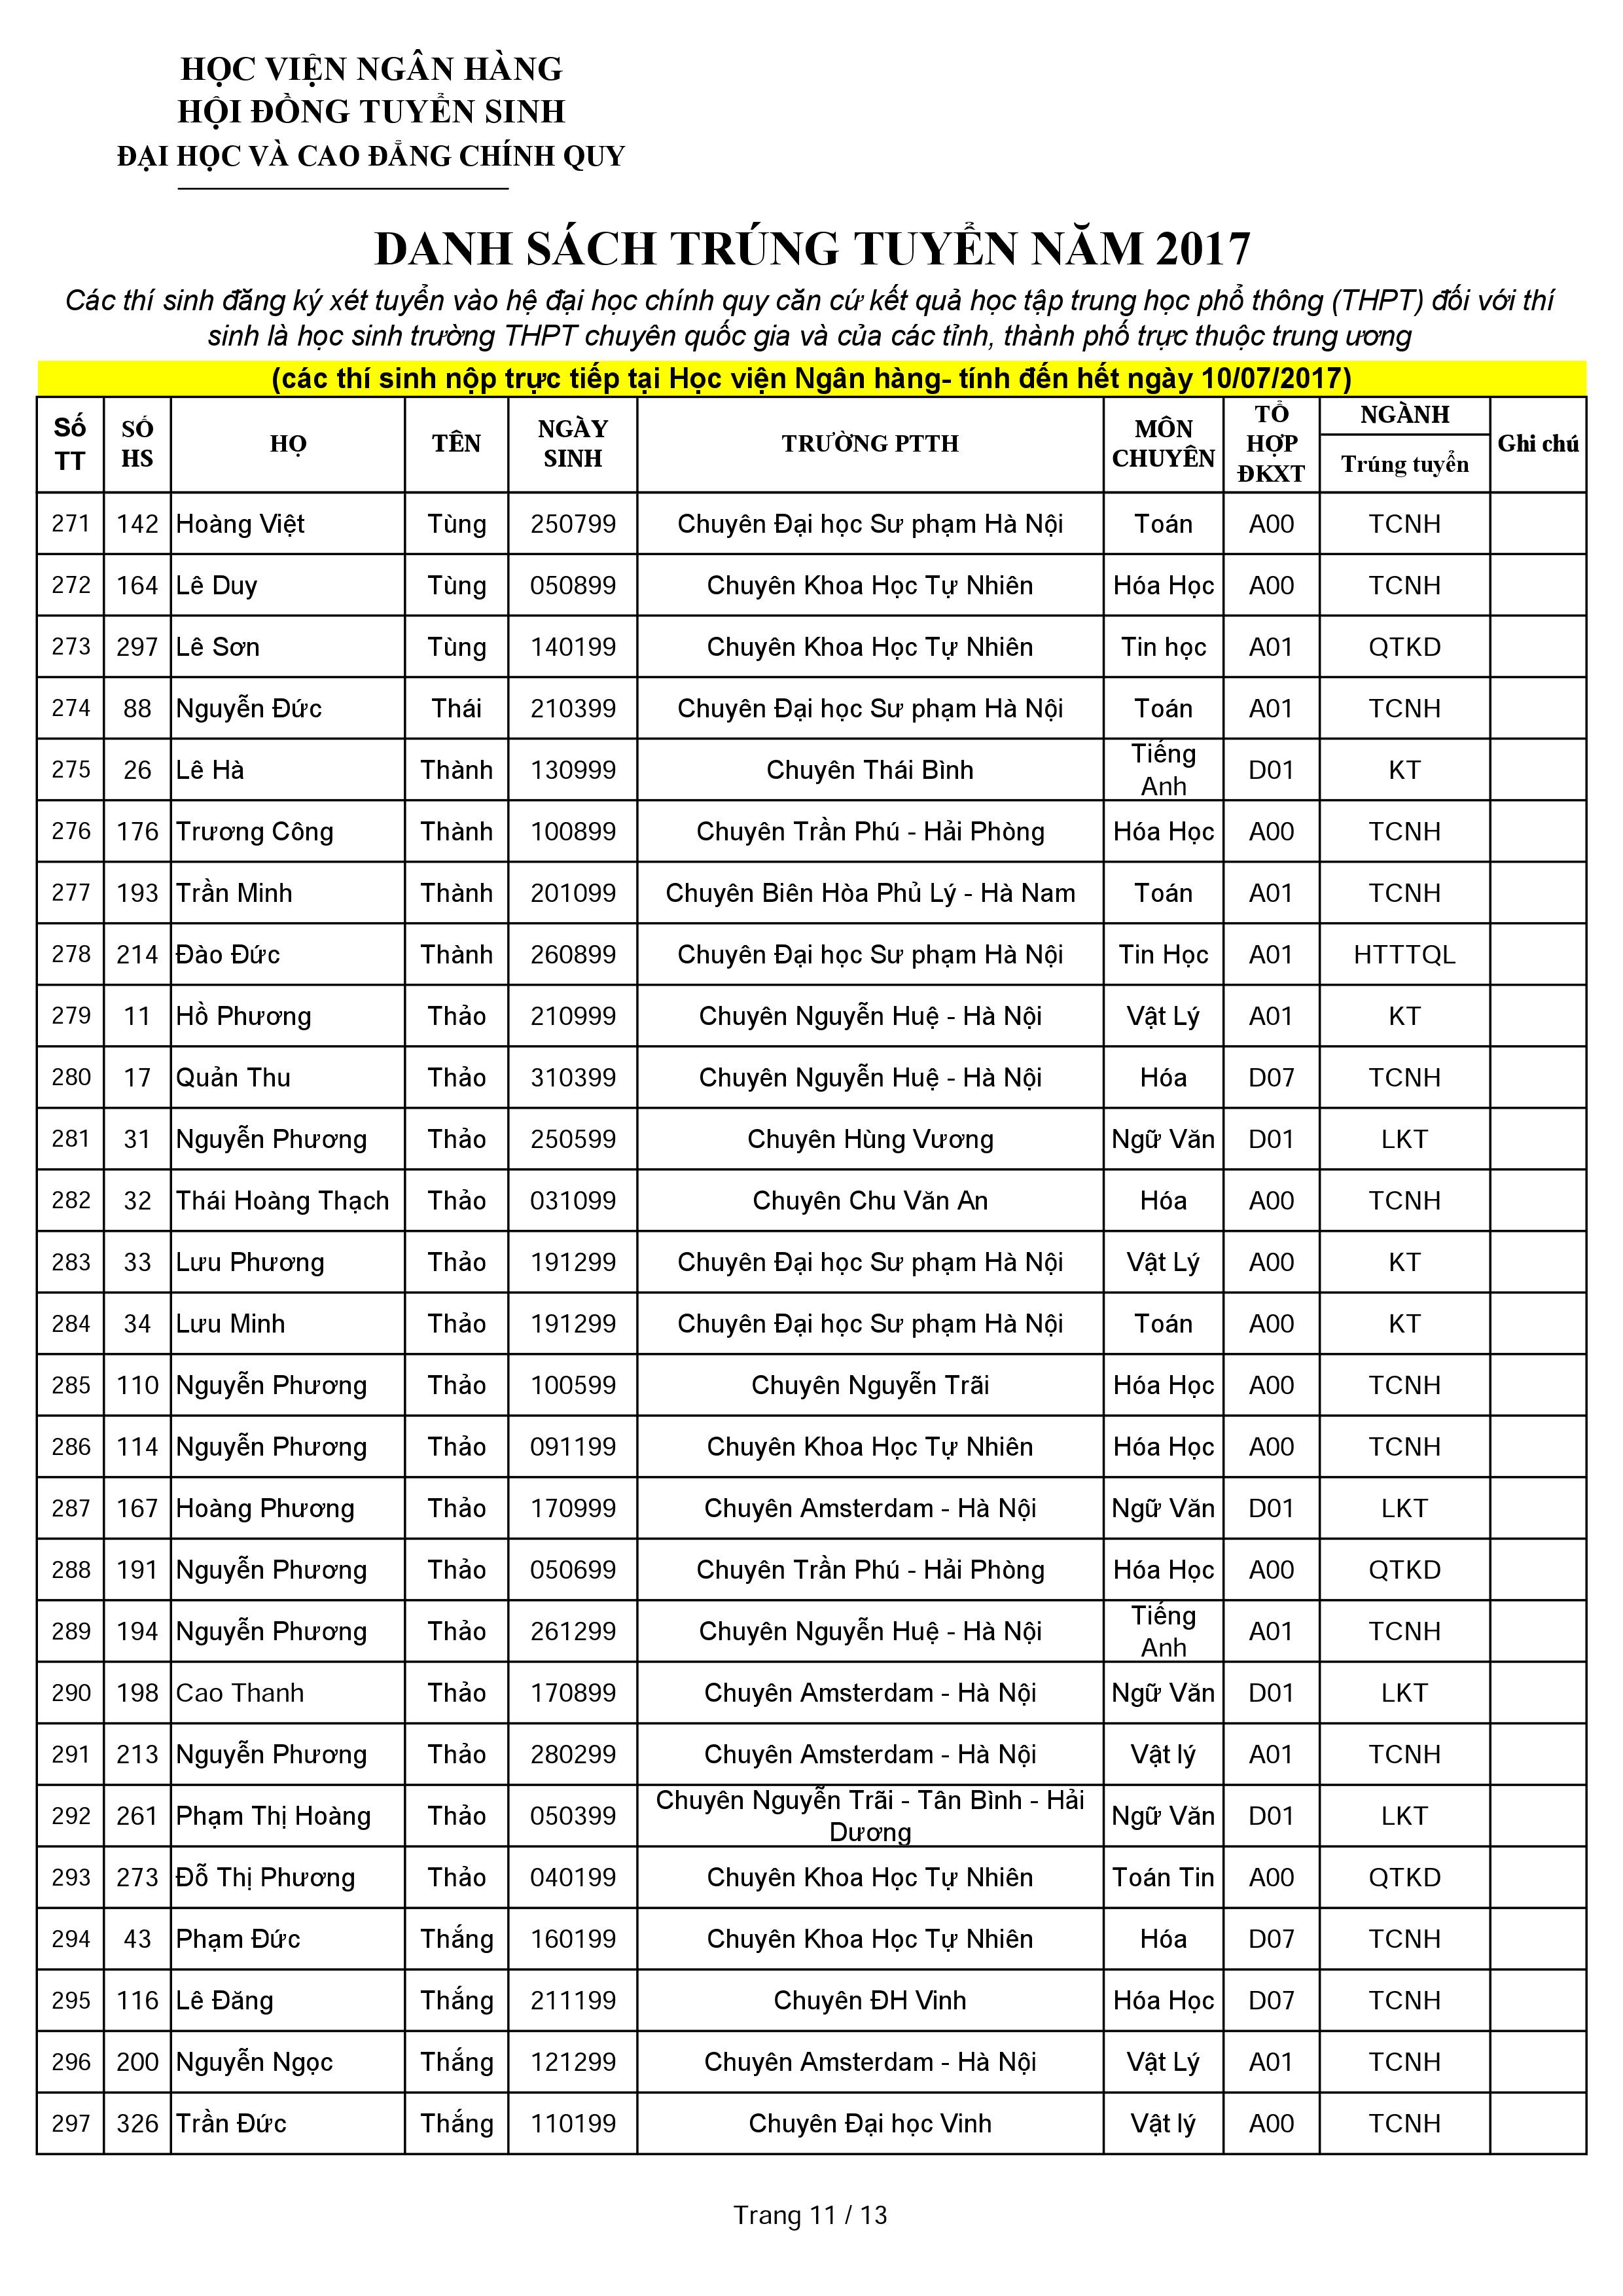 Danh sách thí sinh trúng tuyển dựa vào kết quả học tập THPT năm 2017 qua hình thức nộp trực tiếp